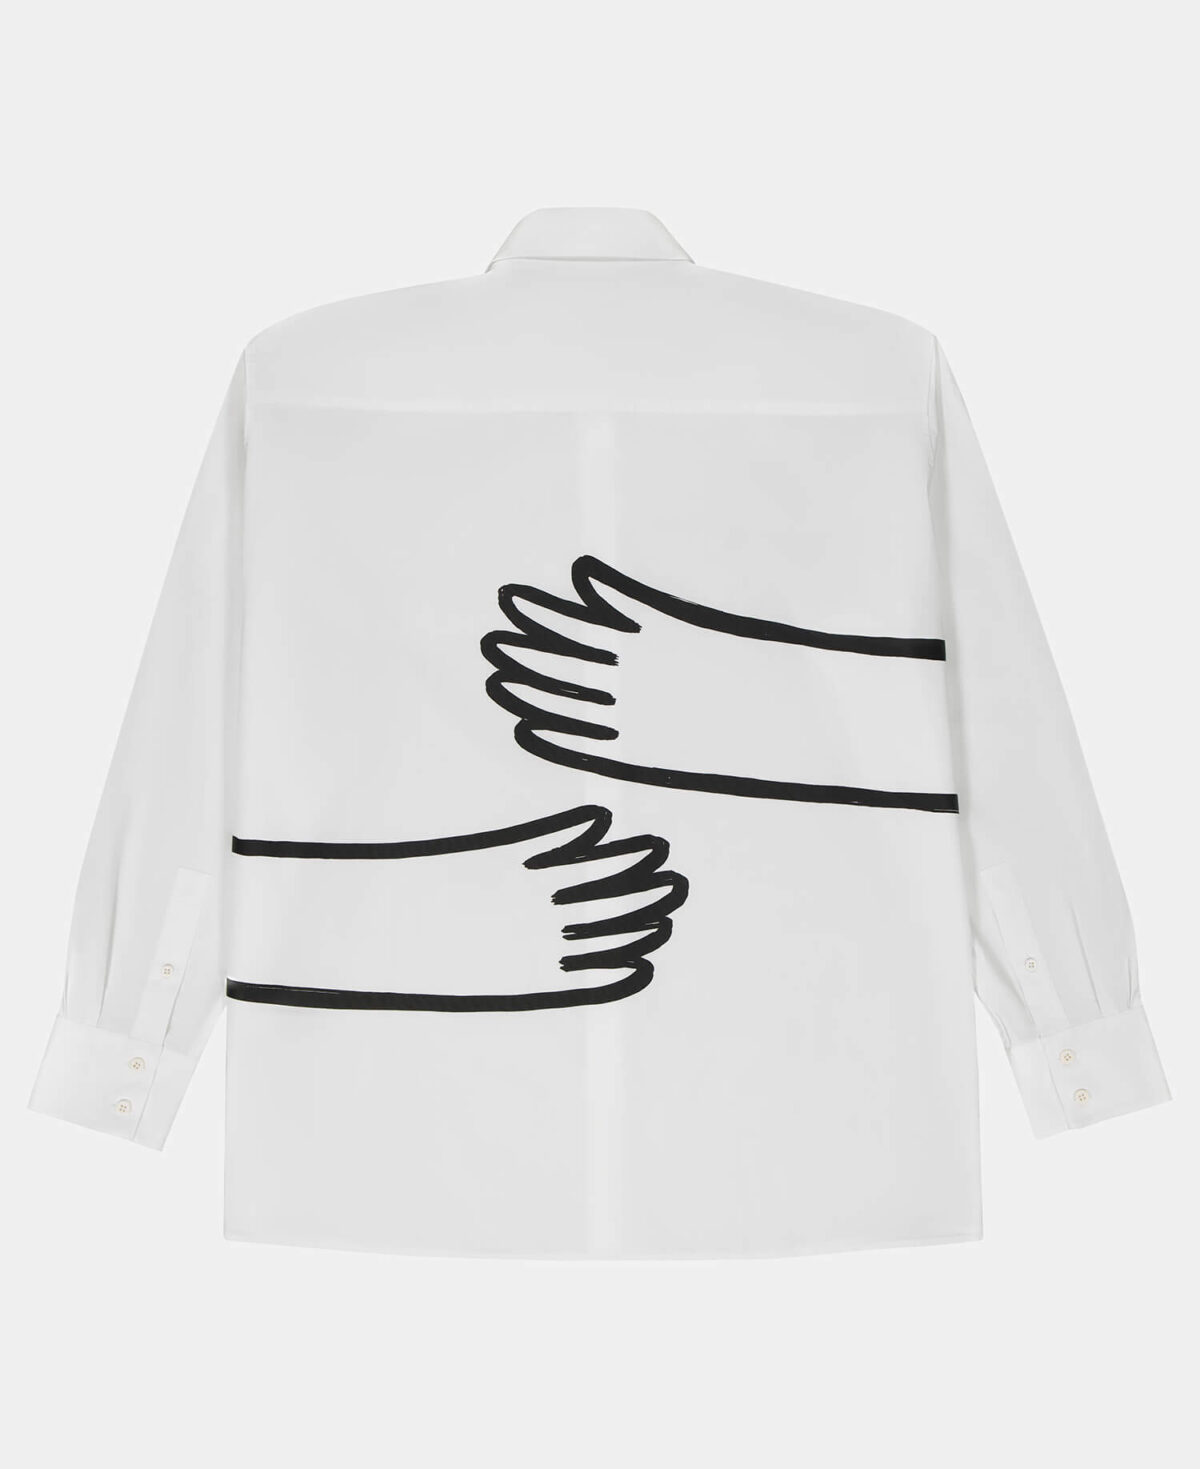 Bil's x Esra Gülmen "Offline Hugs" Unisex Shirt